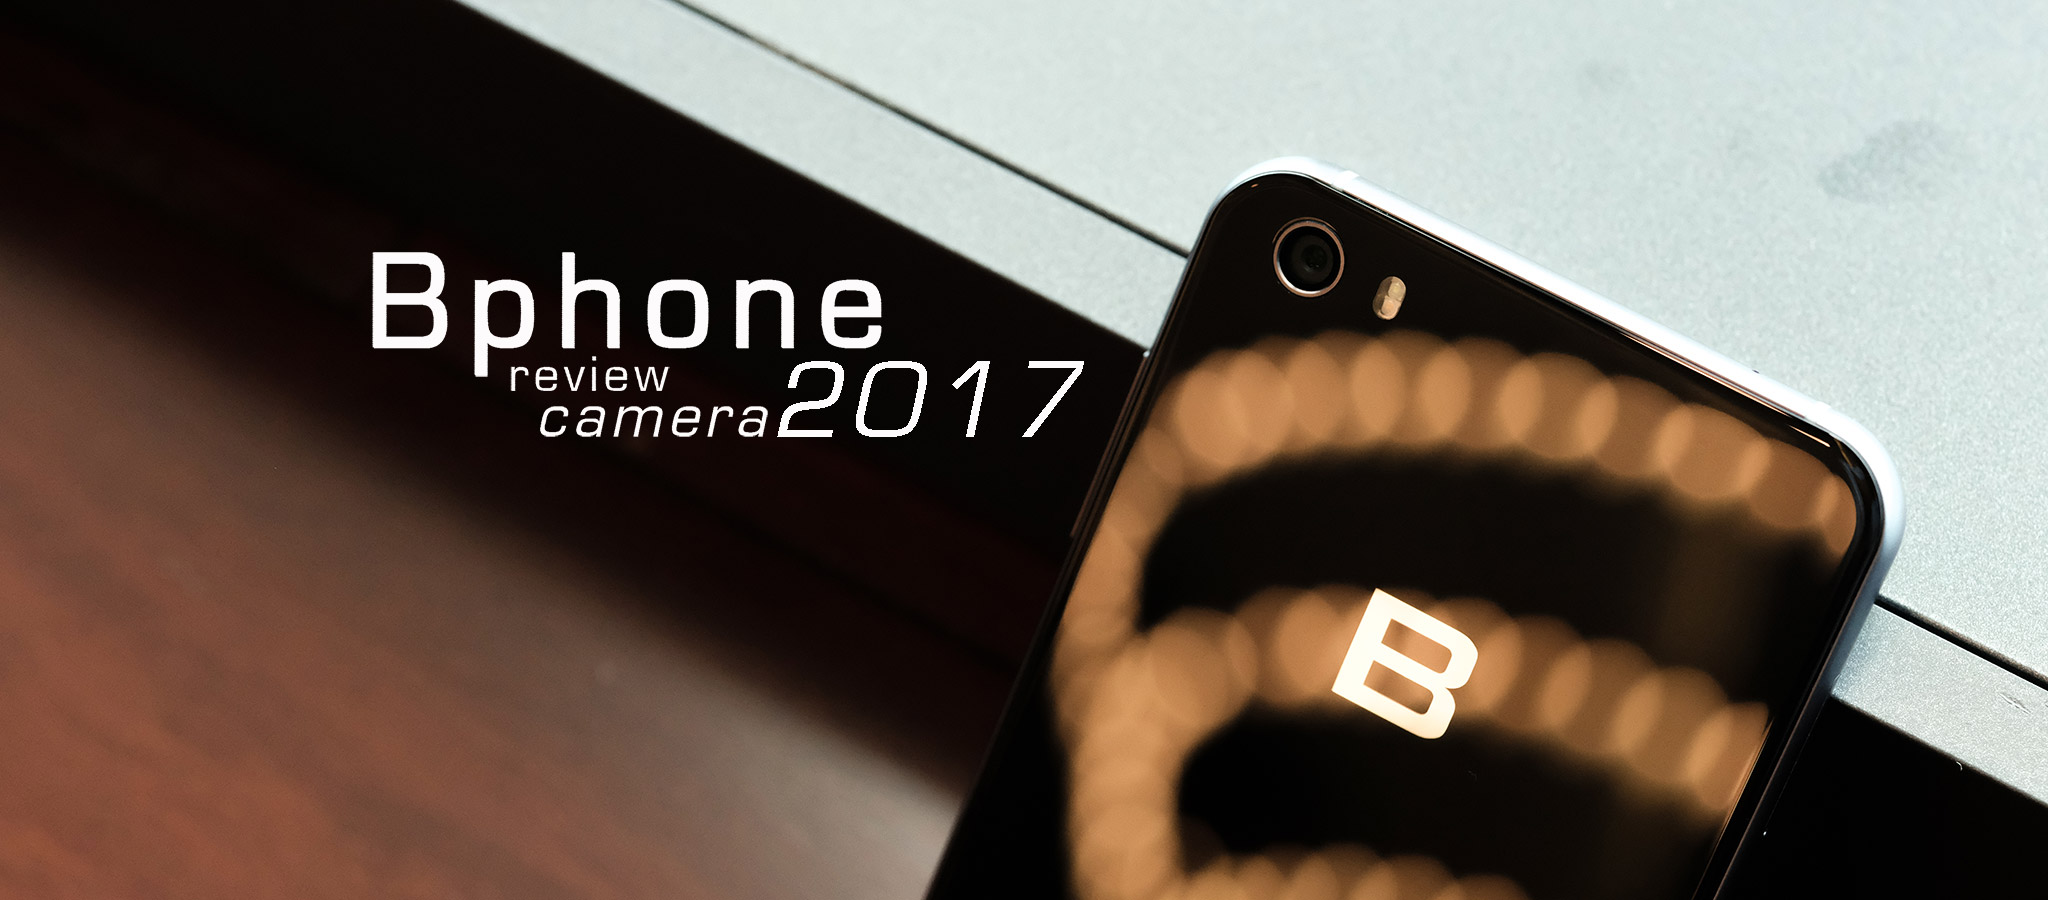 Review Camera Bphone 2017: màu sắc tổng thể khá, AI Camera chưa tốt